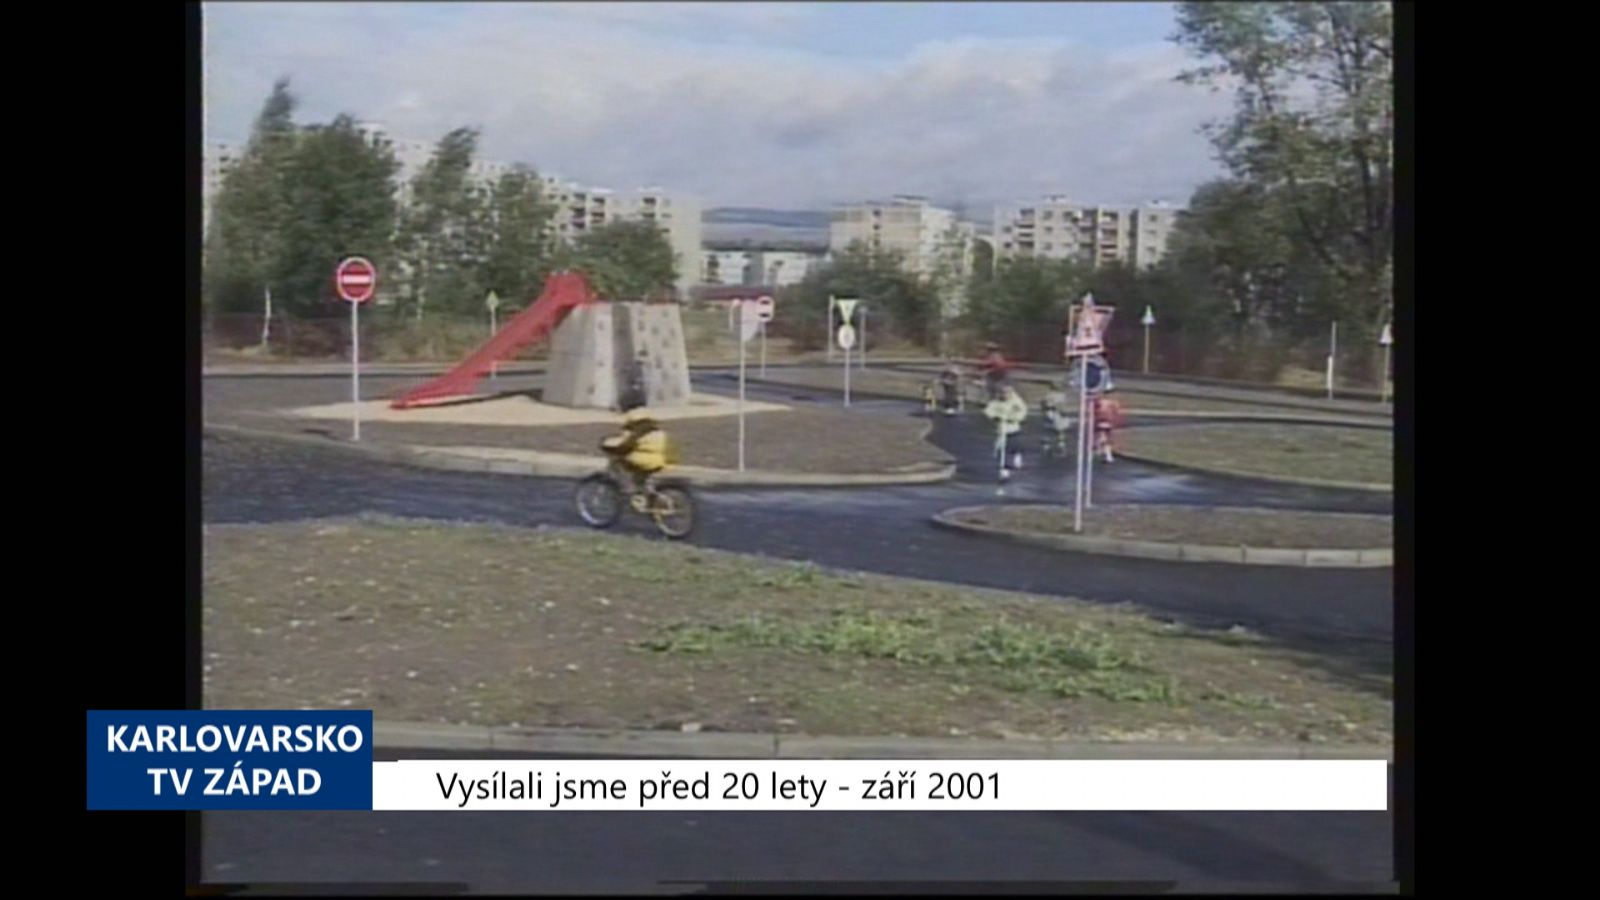 2001 – Sokolov: Dopravní hřiště vyšlo na 1,5 milionu (TV Západ)